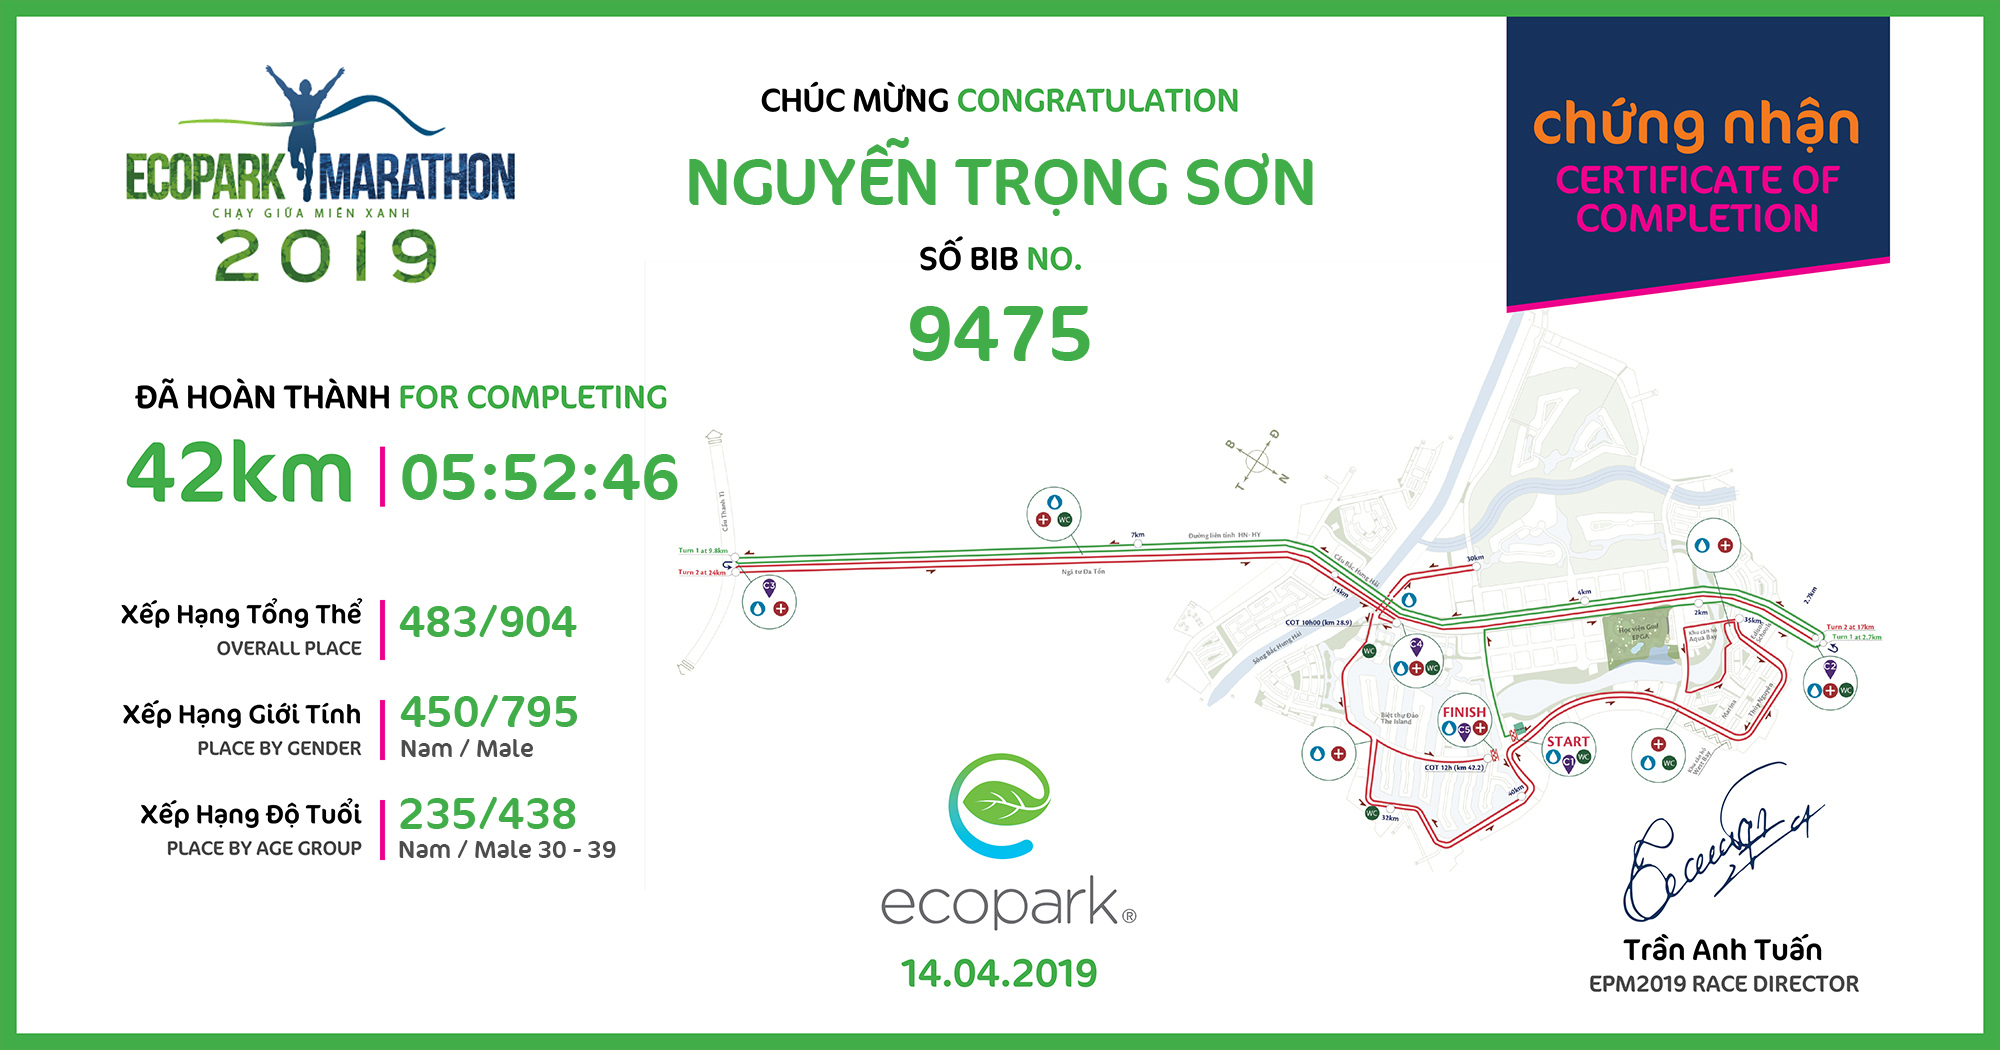 9475 - Nguyễn Trọng Sơn